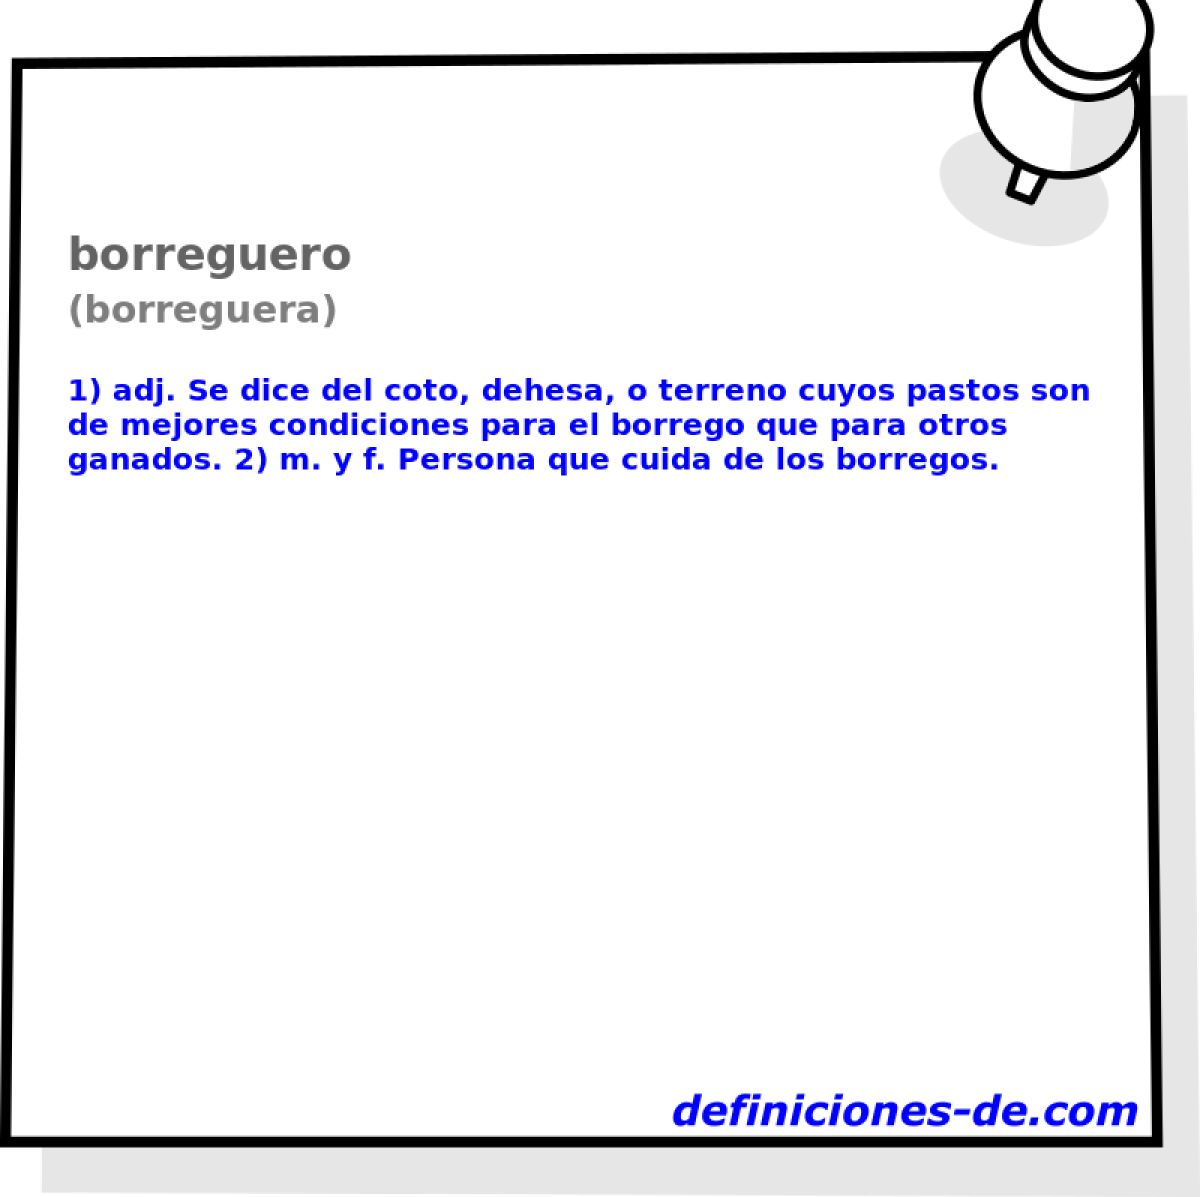 borreguero (borreguera)